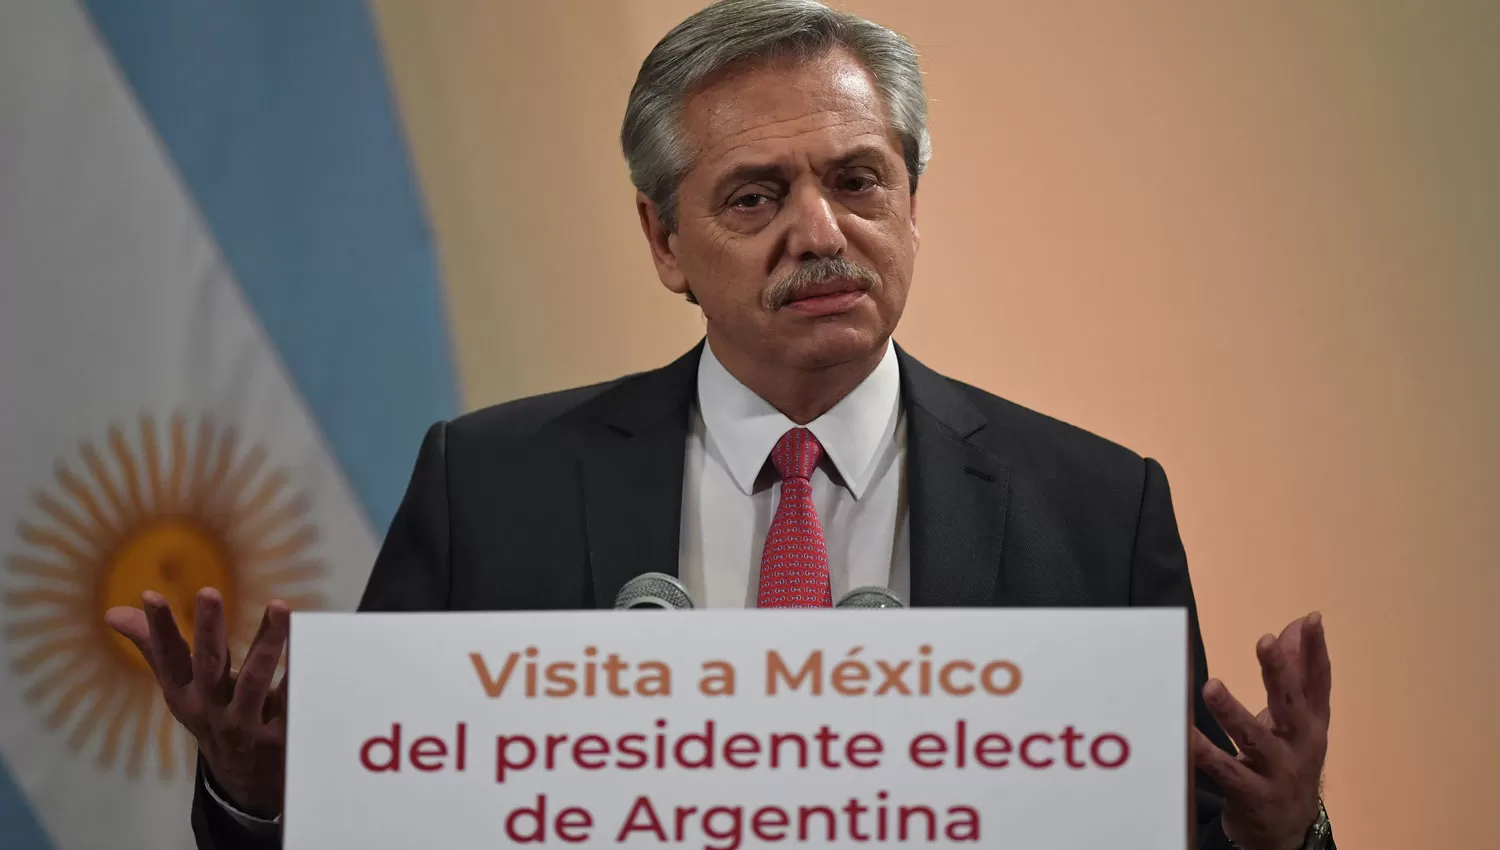 PRINCIPIOS. Alberto Fernández, durante su discurso en la UNAM.